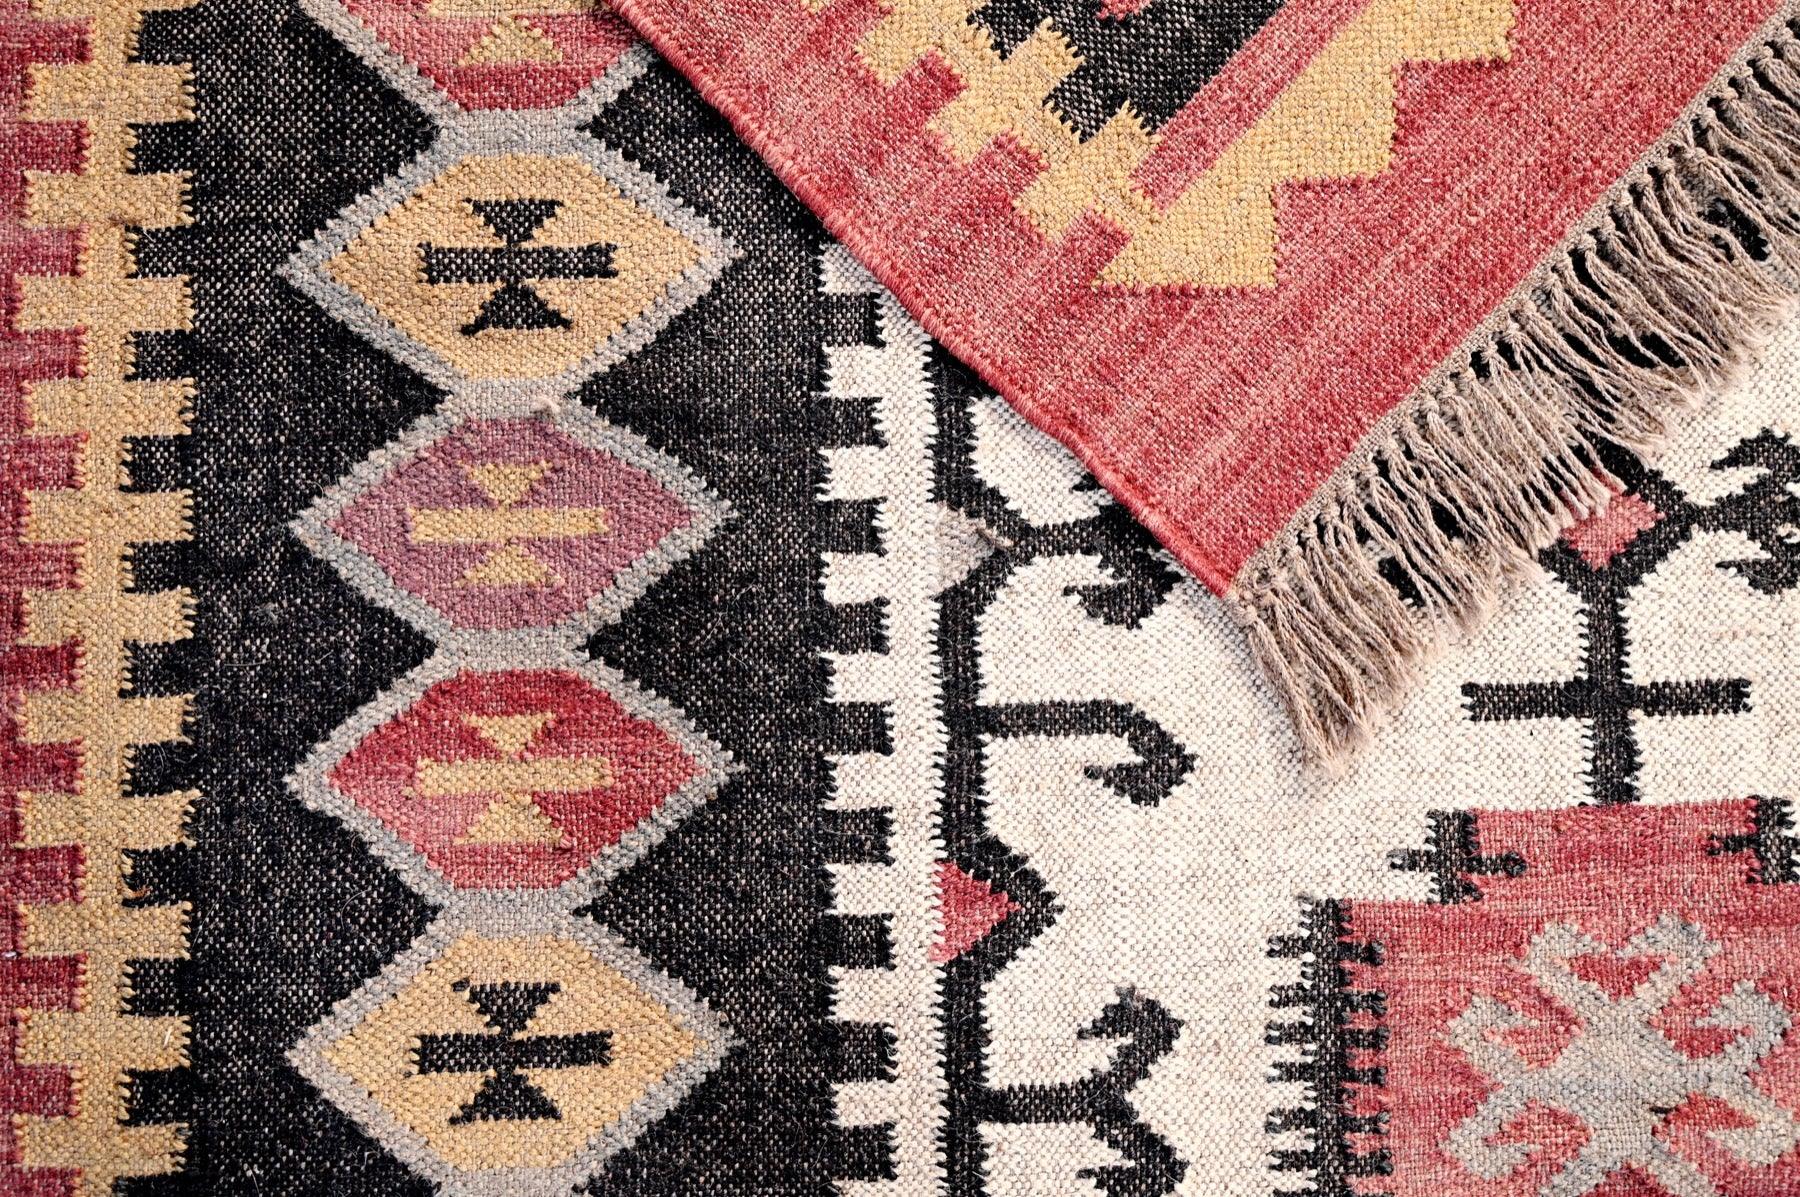 Alfombra Kilim Grande, diseño étnico,multicolor, hecha a mano de Lana y Yute - 180x270 cm - Origen India -Tintes Naturales- Fibras Sostenibles